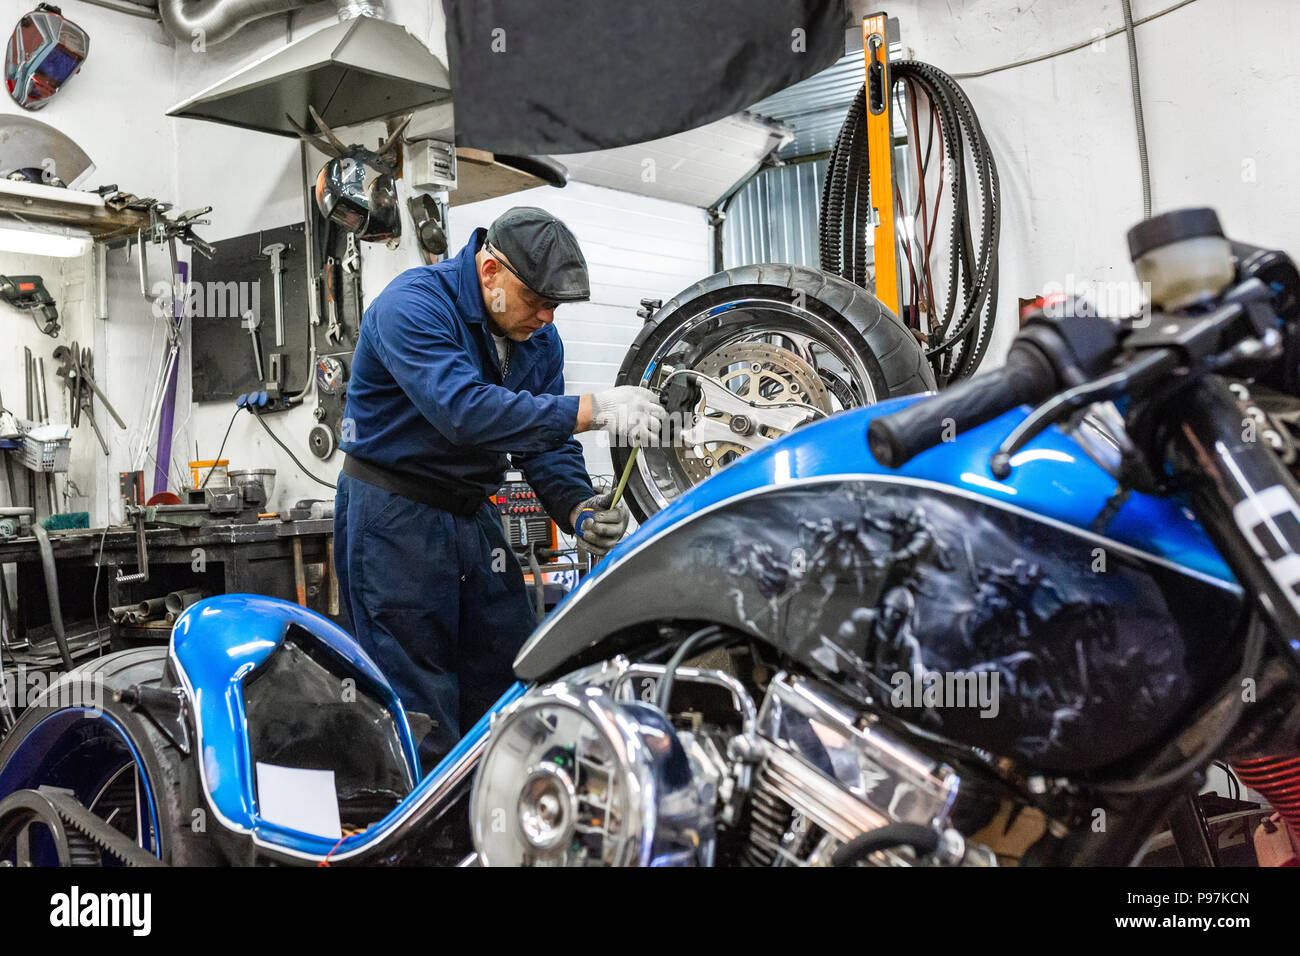 Mann reparieren Motorrad Reifen mit Reparatursatz Stecker, Reifen Reparatur  Set für schlauchlose Reifen Stockfotografie - Alamy